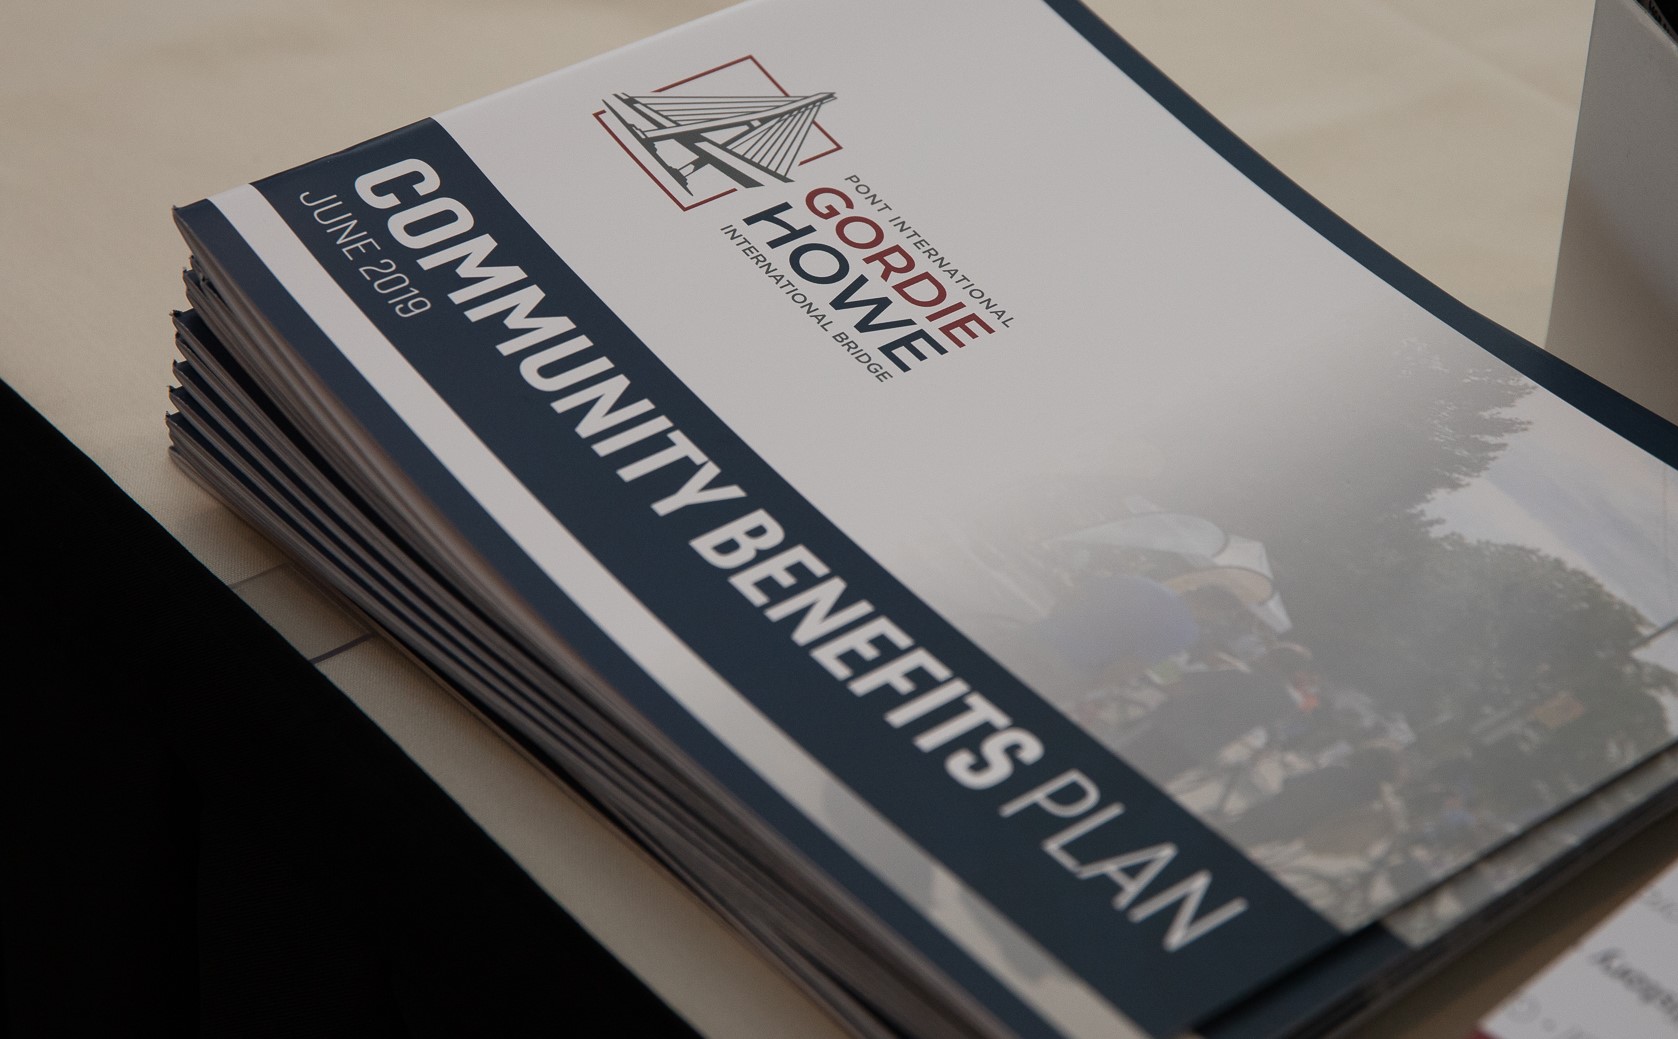 Printed stack of the Gordie Howe International Bridge Community Benefits plan